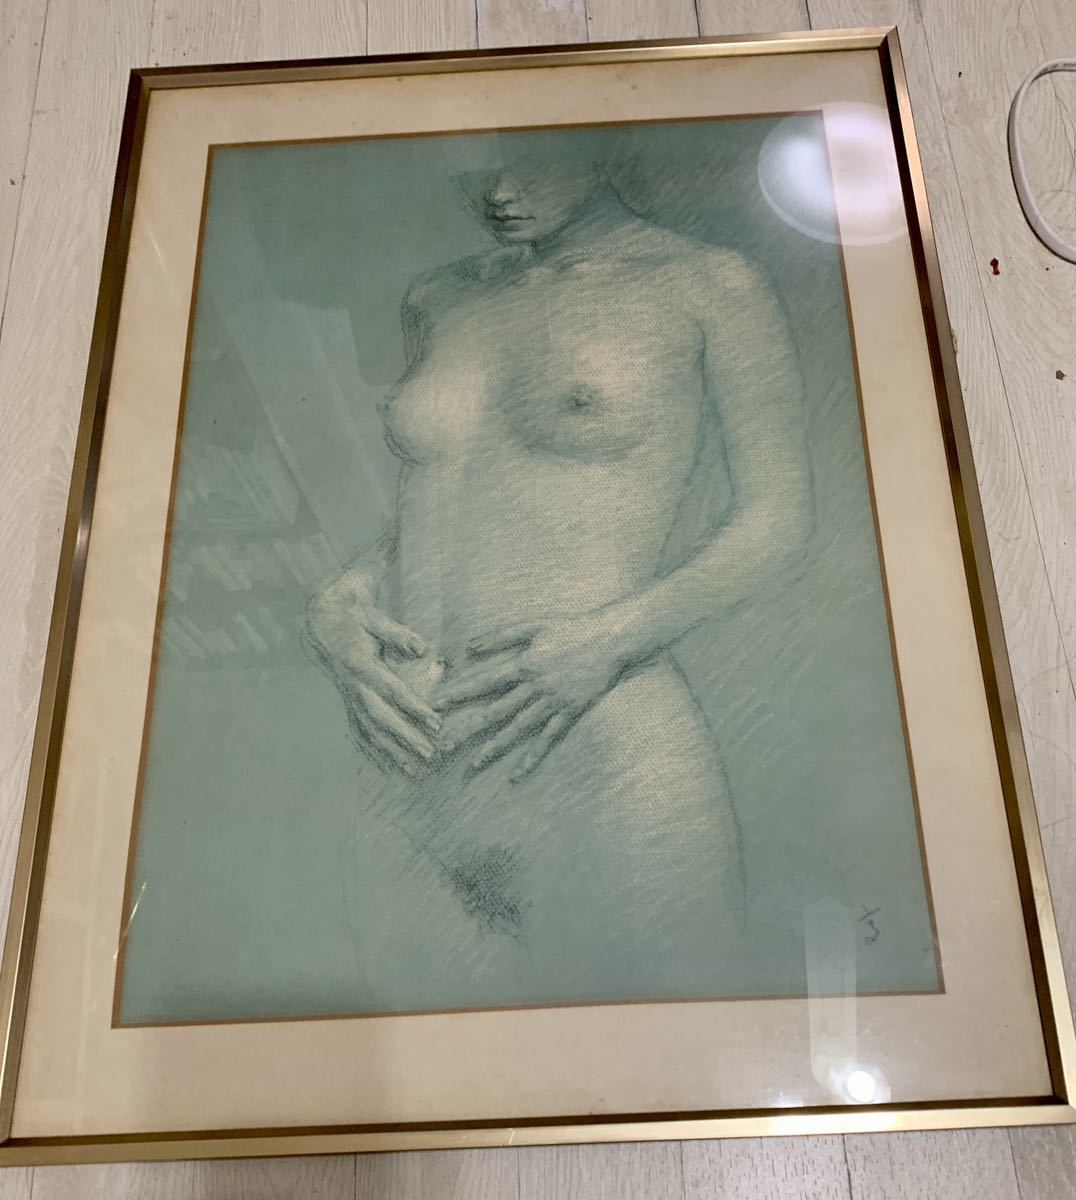  author [.] nude . made? frame 